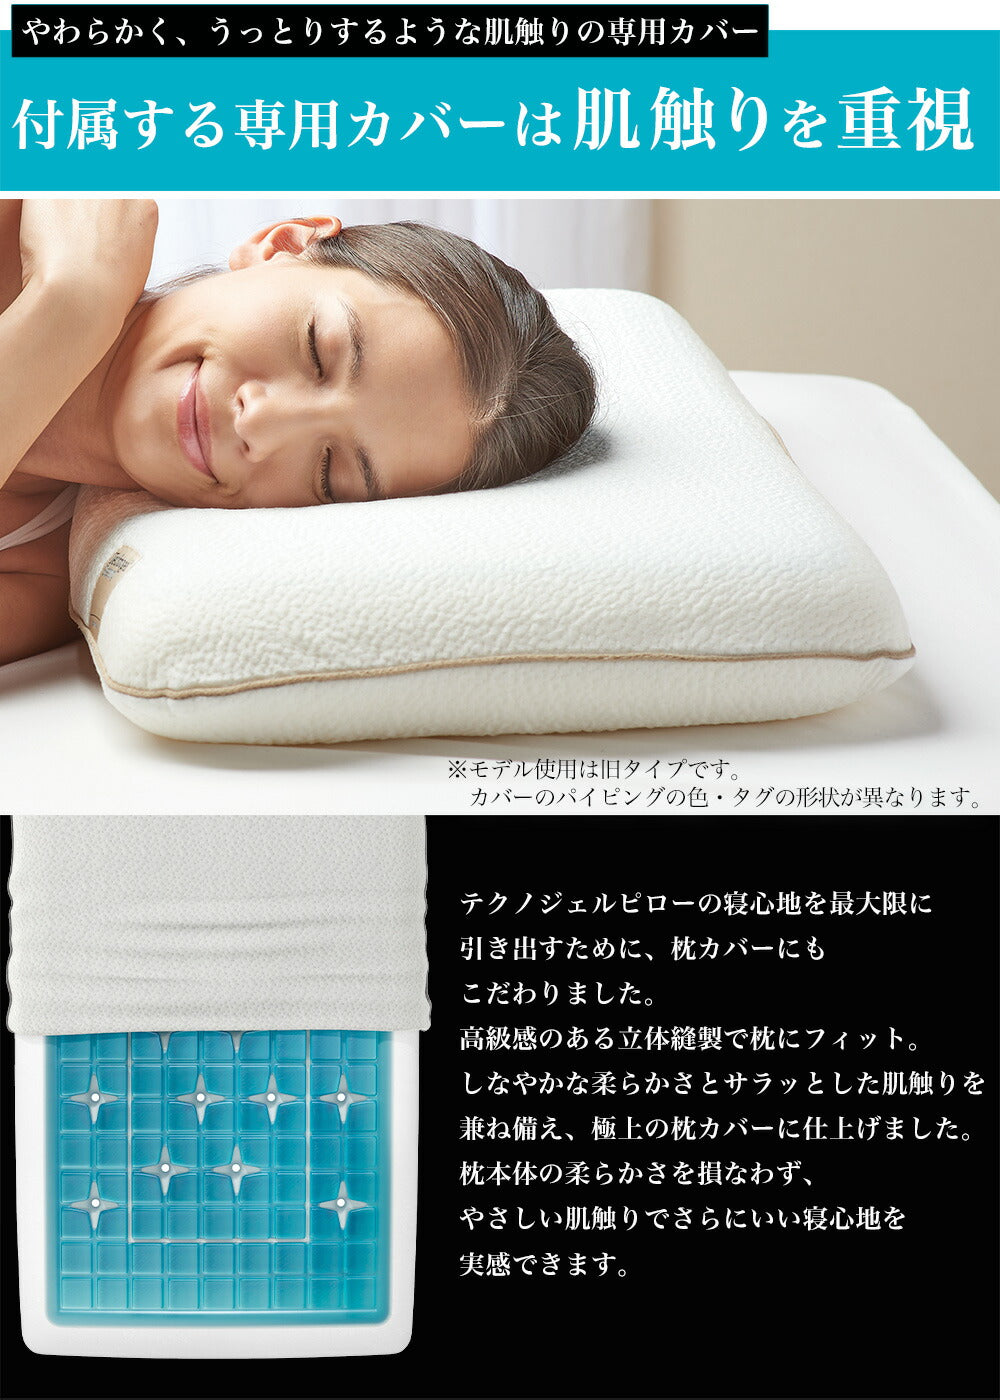 ② technogel sleeping 枕カバー - シーツ・カバー